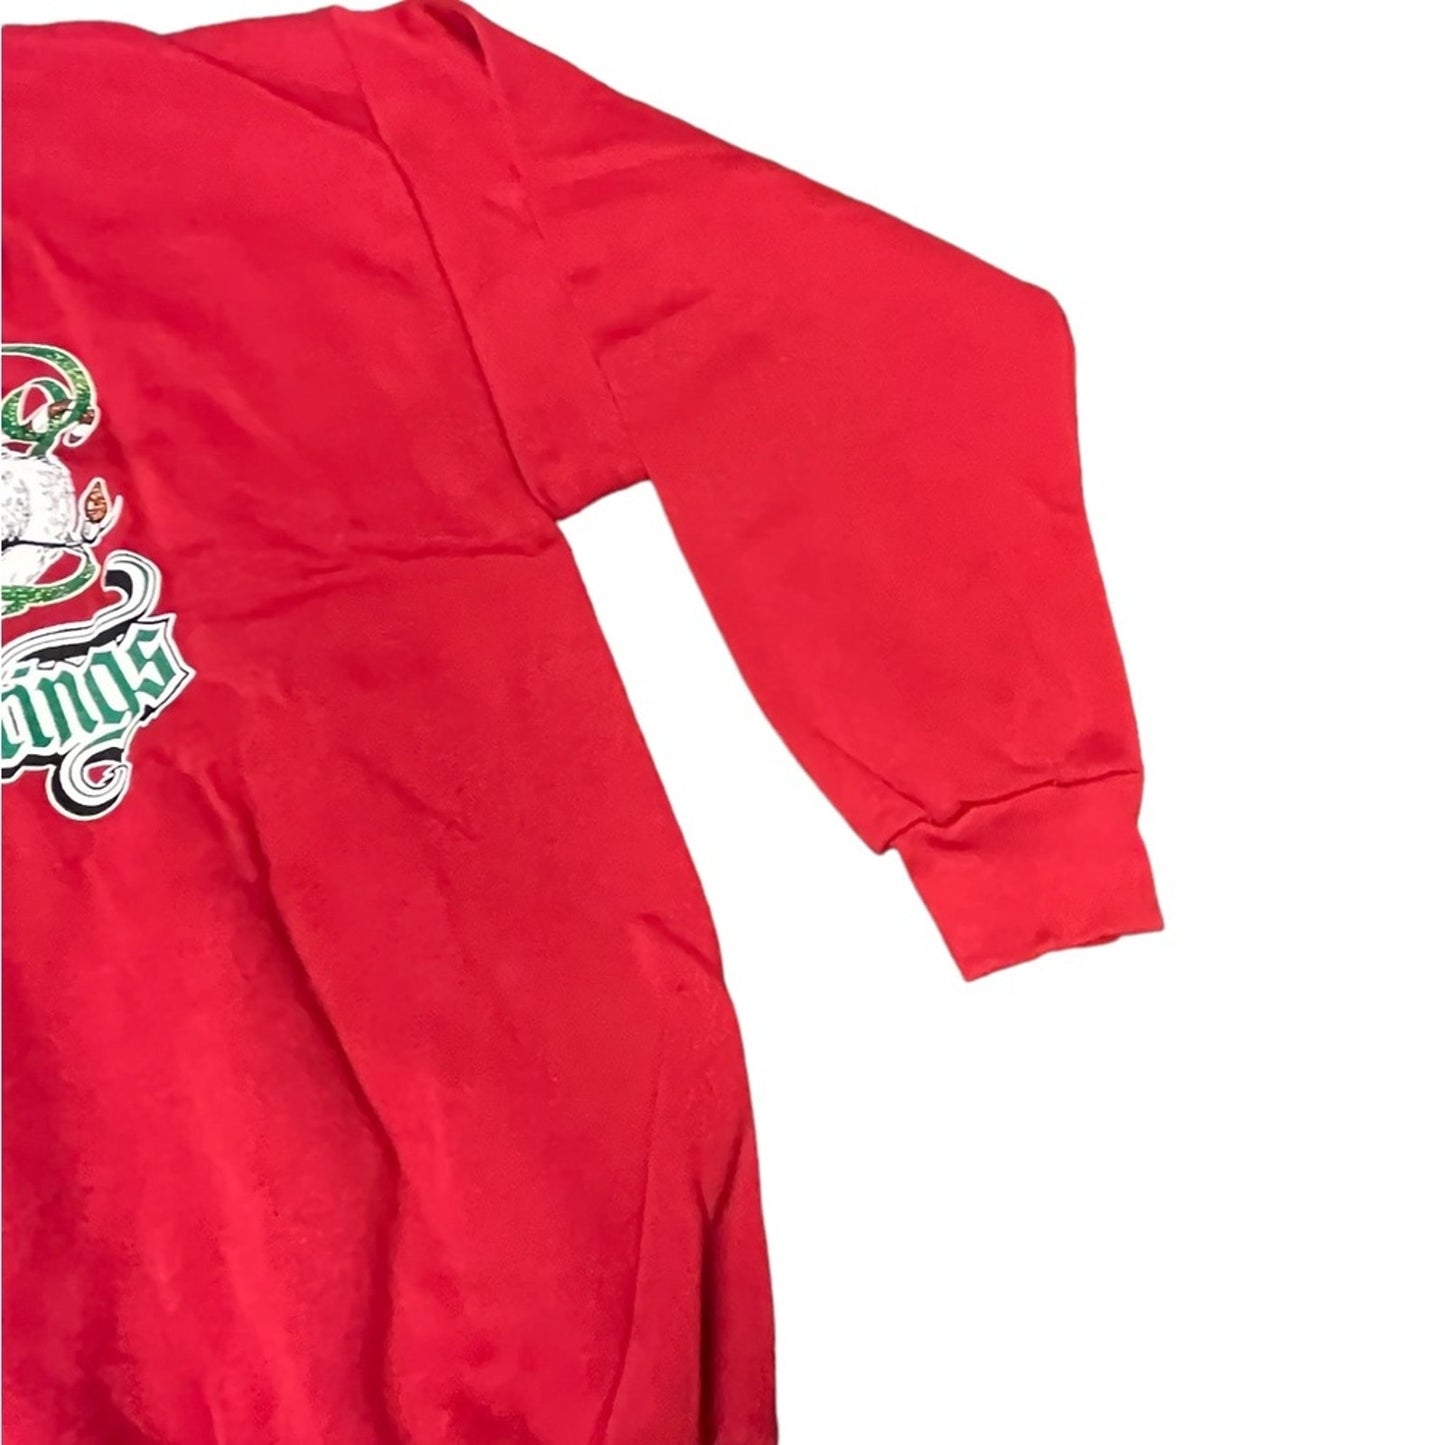 1980's-90's Red Christmas Sweatshirt XL 80s Velva Sheen Cats